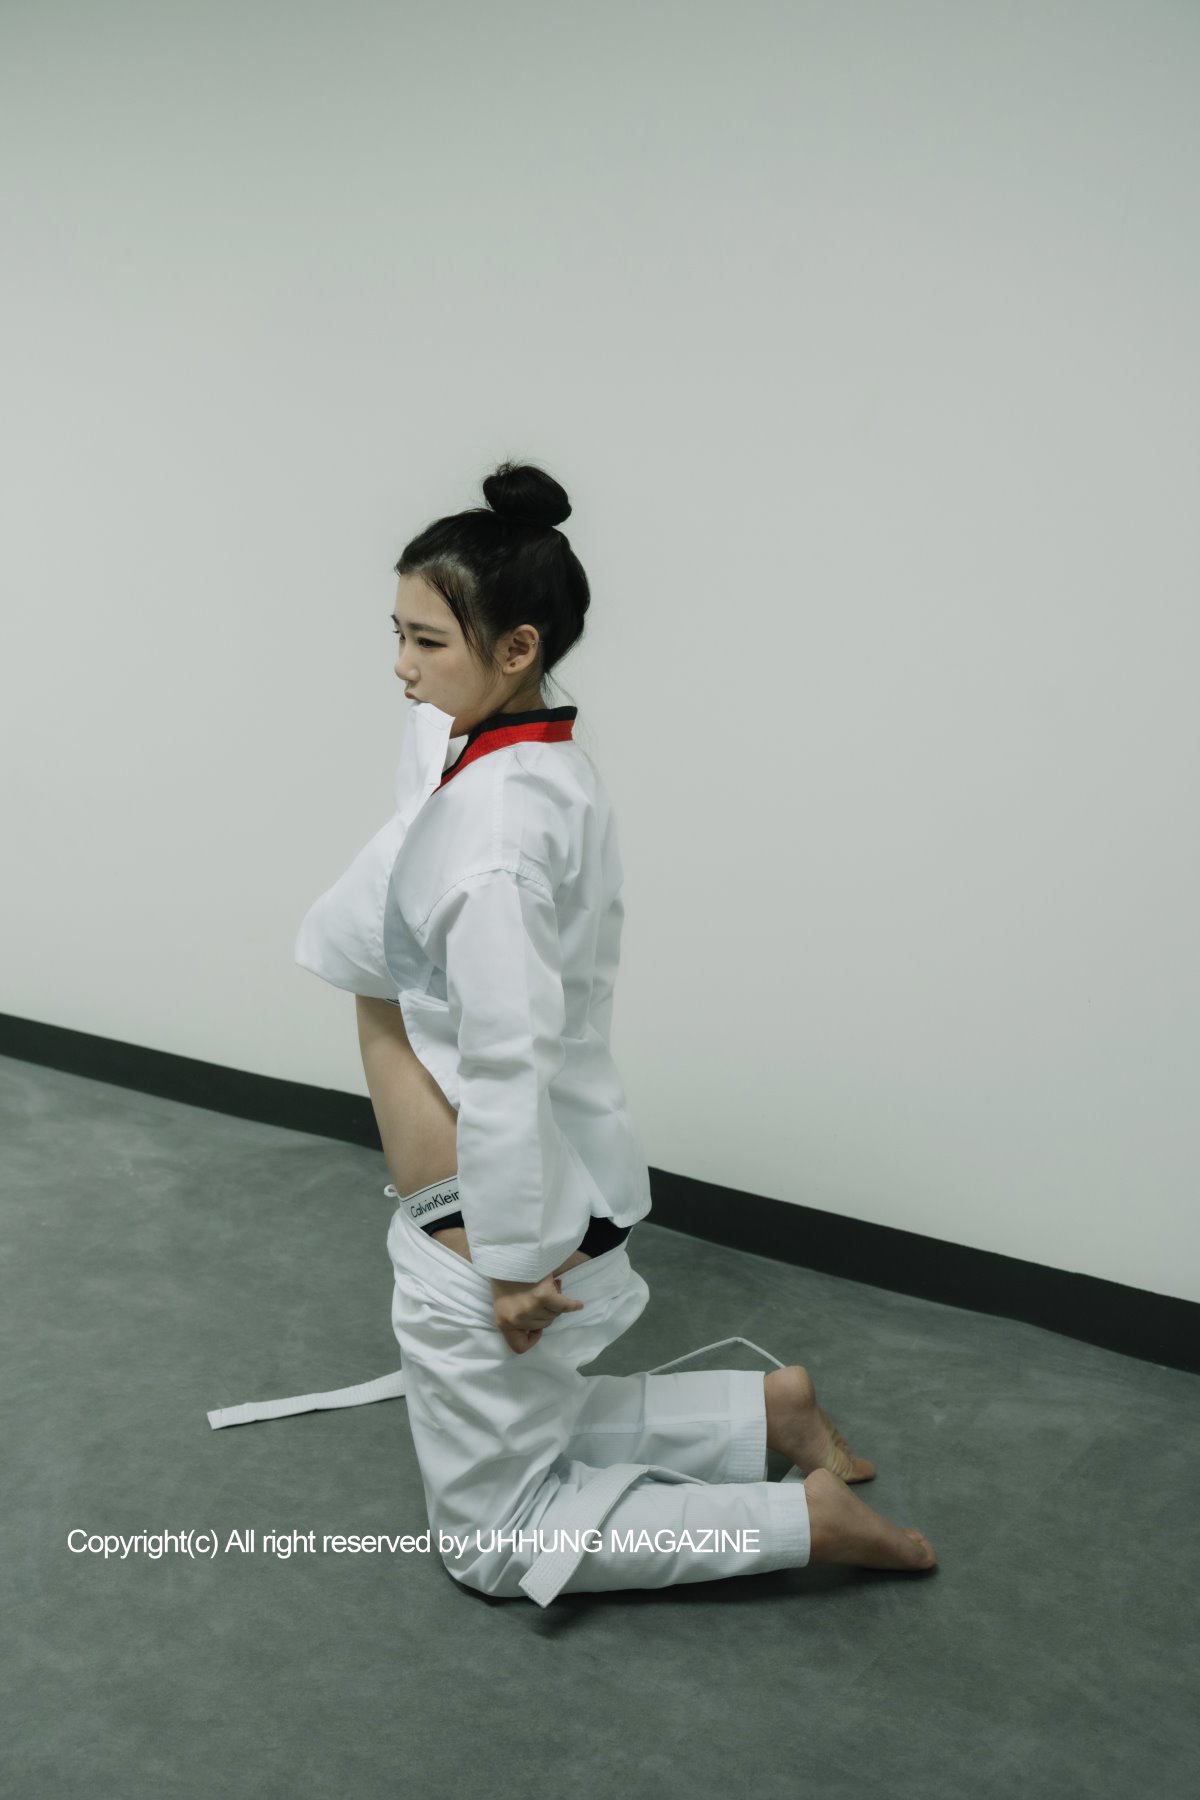 UHHUNG MAGAZINE Jenn Vol 1 Taekwondo Part1 0048 6698722189.jpg